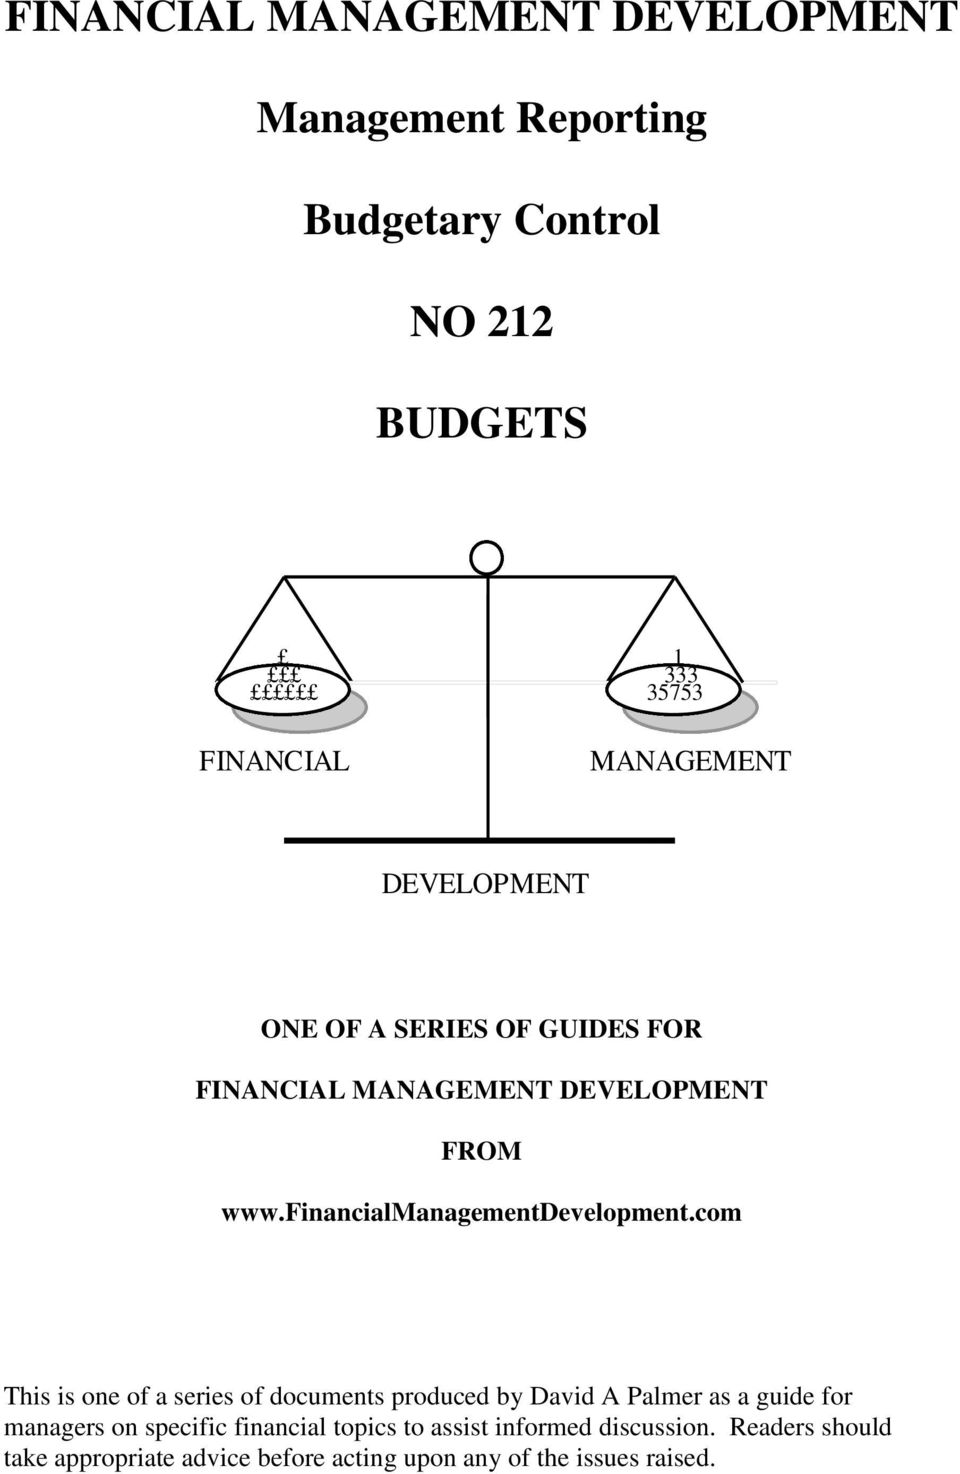 financialmanagementdevelopment.